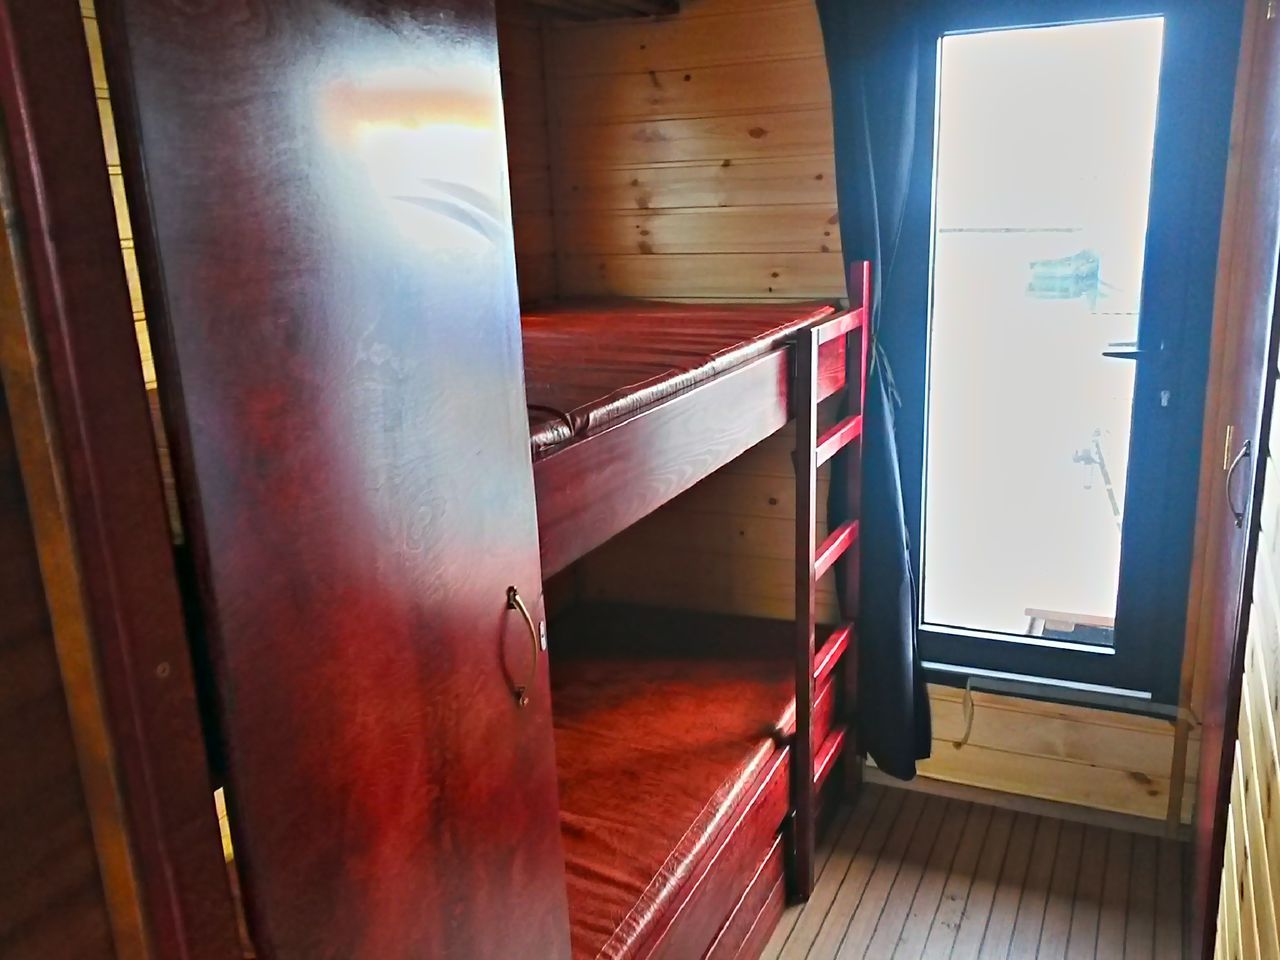 Blick in den hinteren Bereich, rechts mit dem klappbaren Doppelstockbett und rechts die Schlafkabine mit Ausziehcouch.